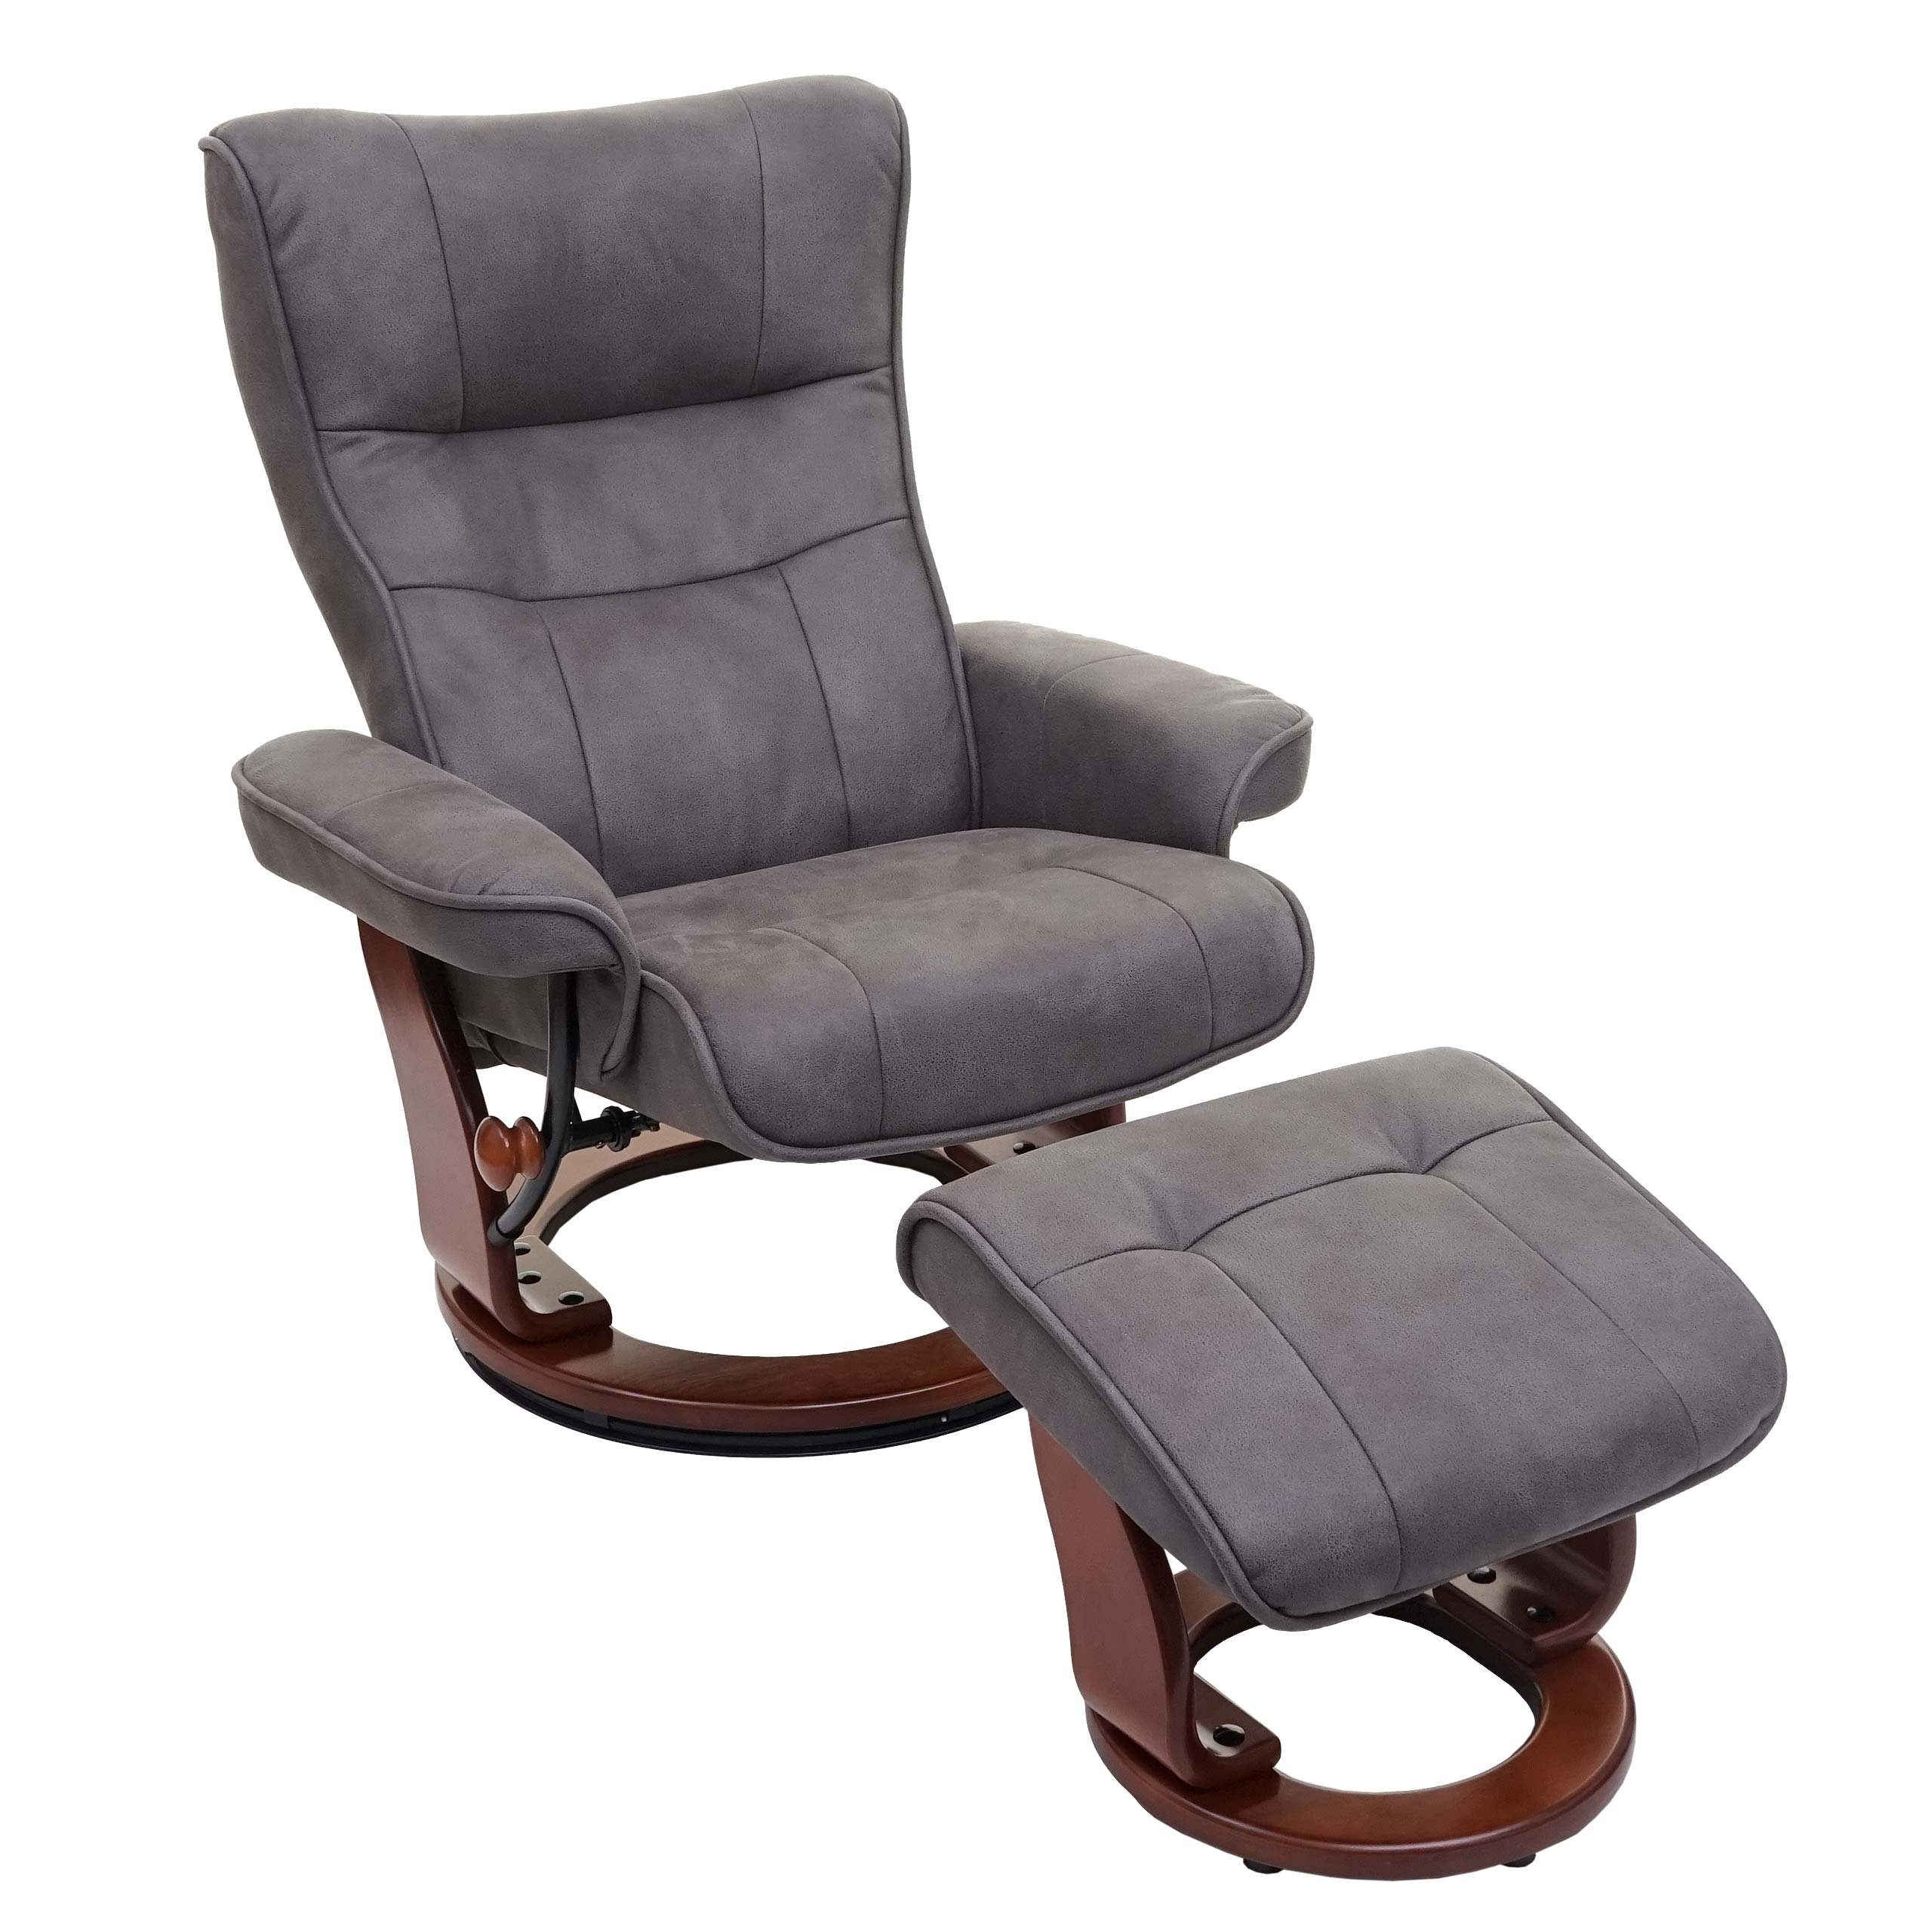 Relaxsessel furniture Polsterung Inkl. Extradicke gepolstertem Breite Fußhocker, Armlehnen, MCA Edmonton-S,